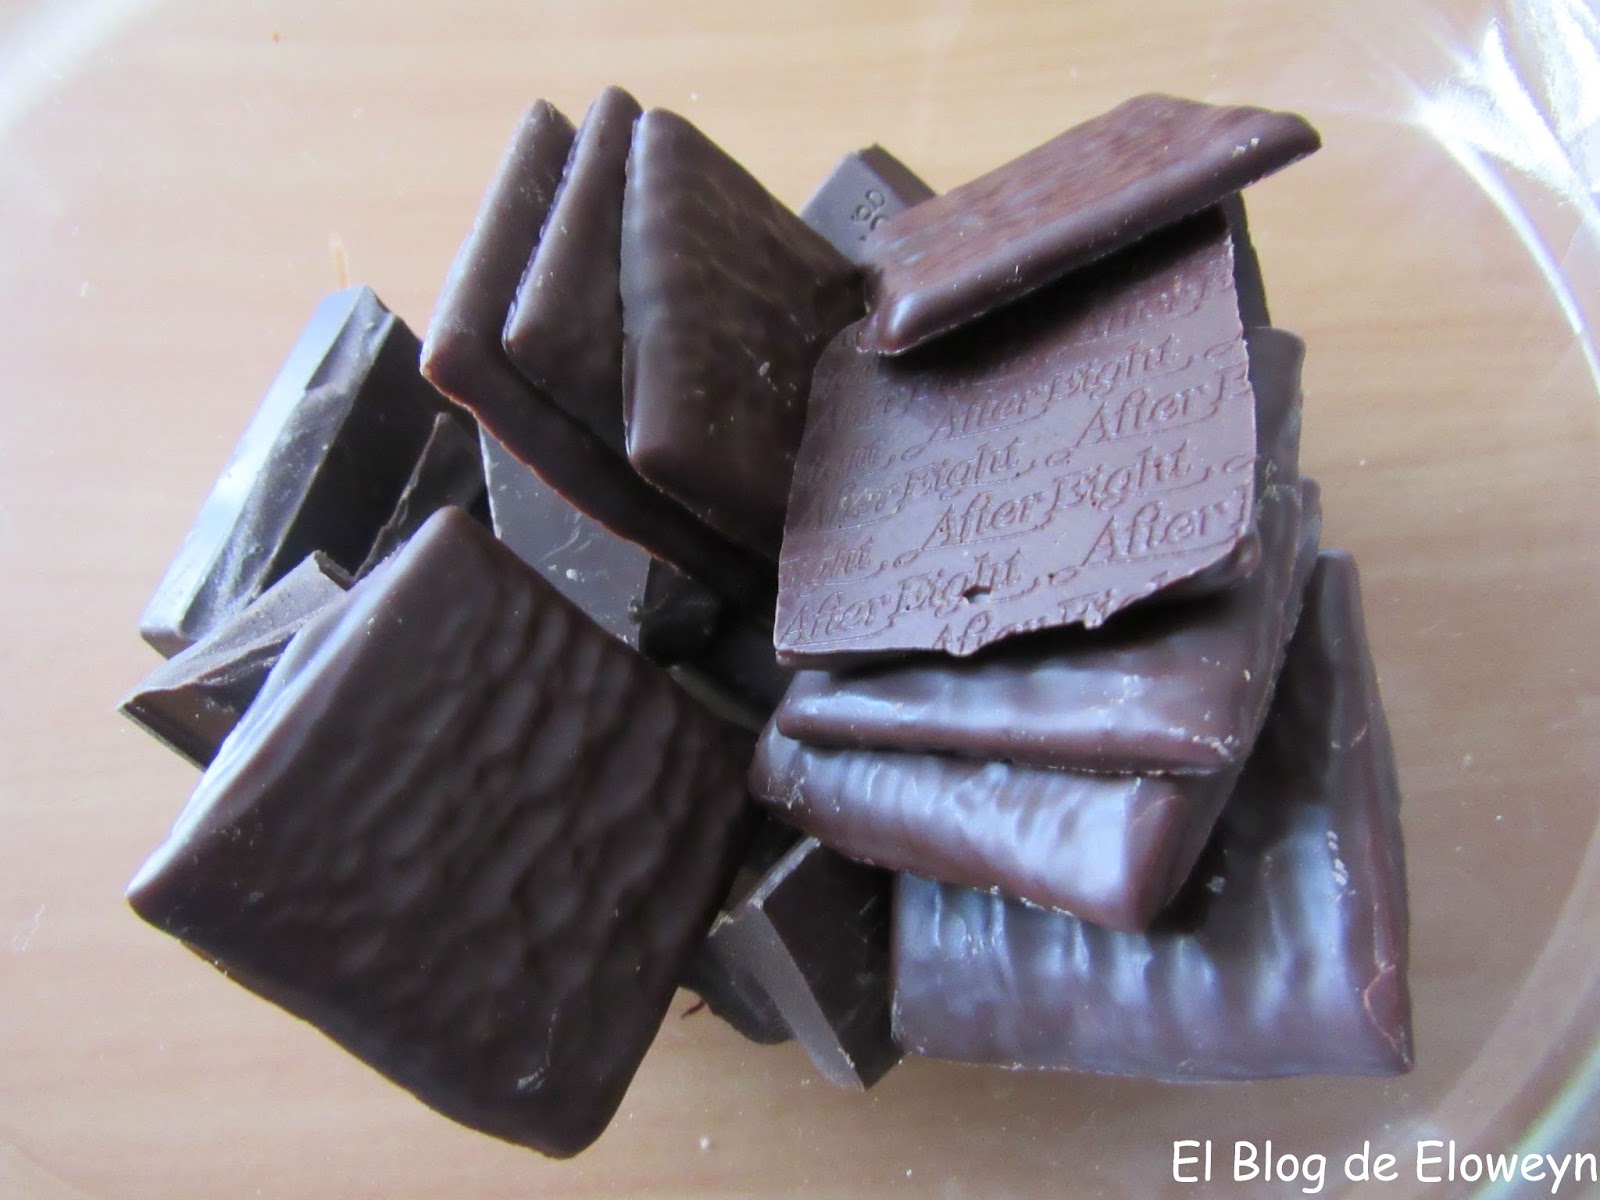 Cobertura de After Eight (chocolate y menta) | El Blog de Eloweyn